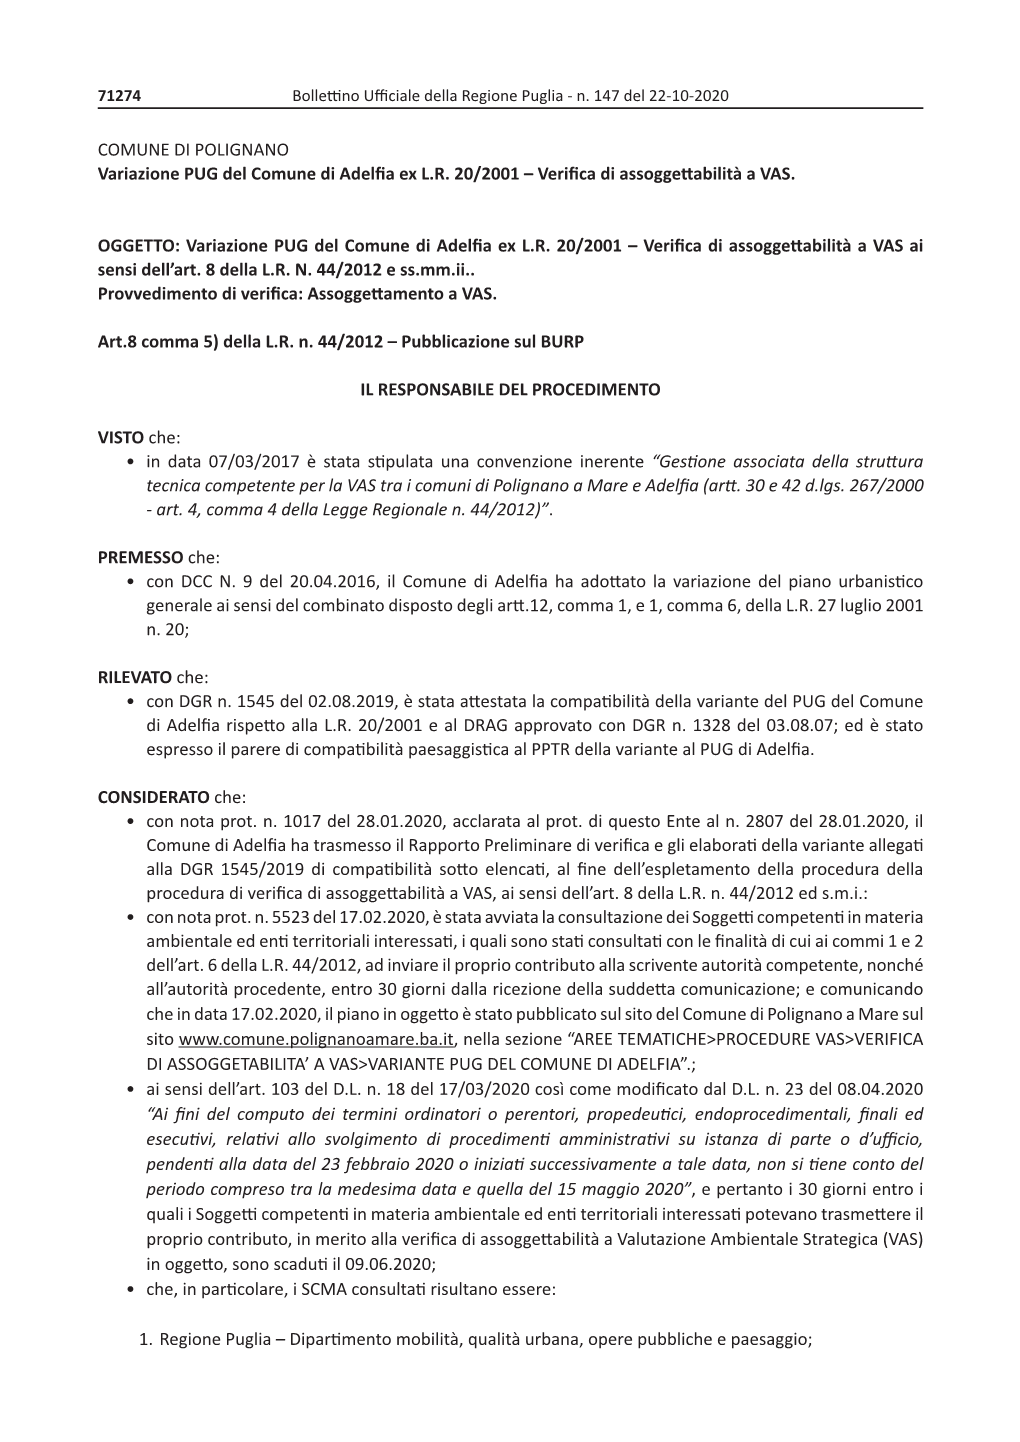 COMUNE DI POLIGNANO Variazione PUG Del Comune Di Adelfia Ex L.R. 20/2001 – Verifica Di Assoggettabilità a VAS